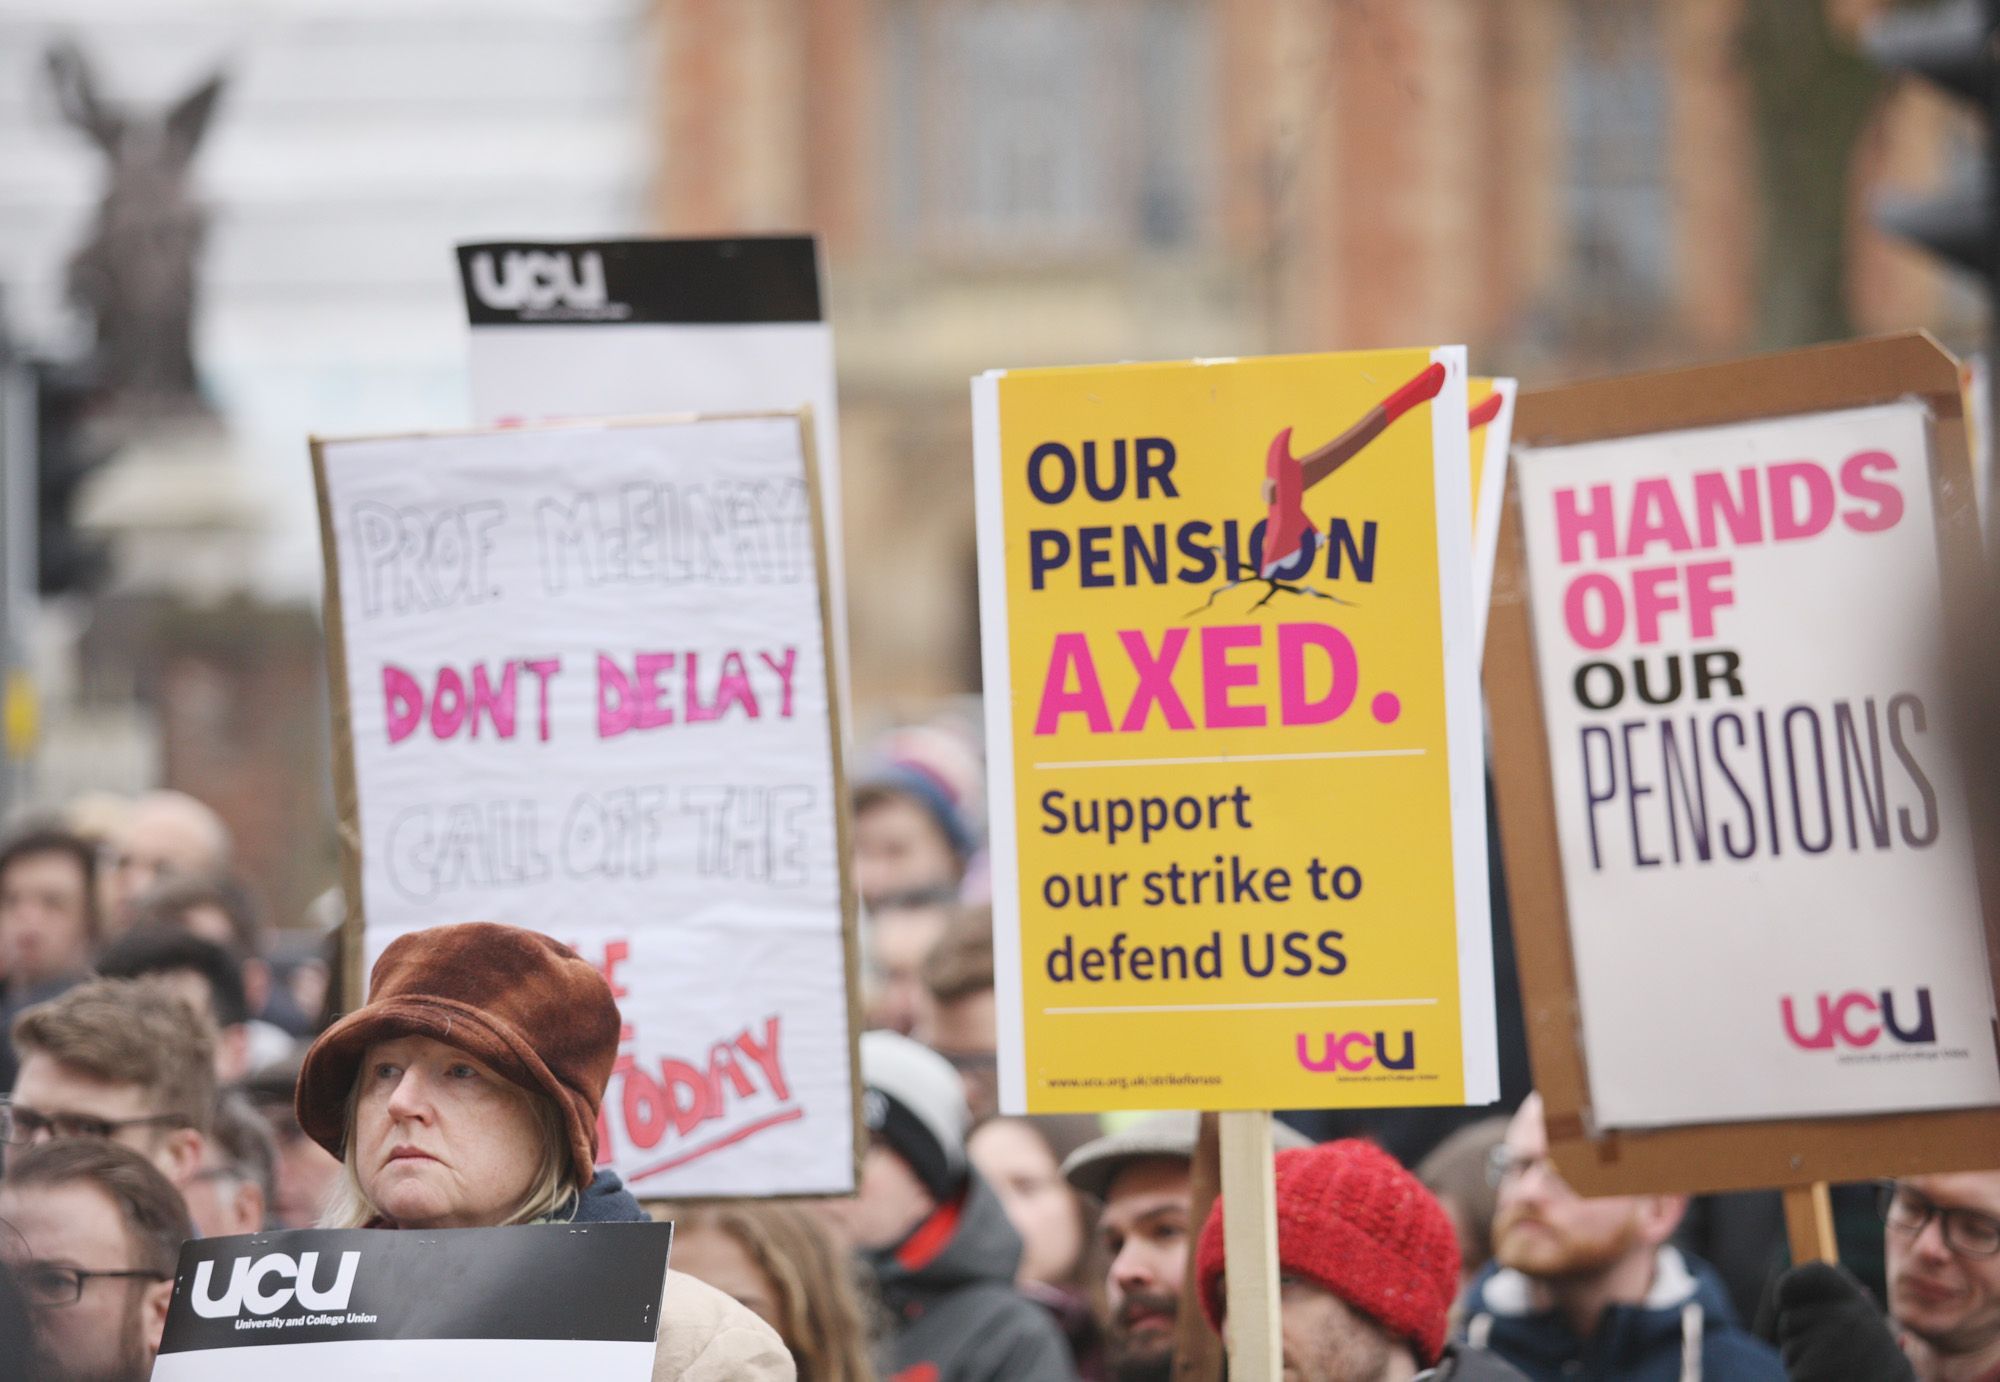 REVISED OFFER: UCU members on strike last year